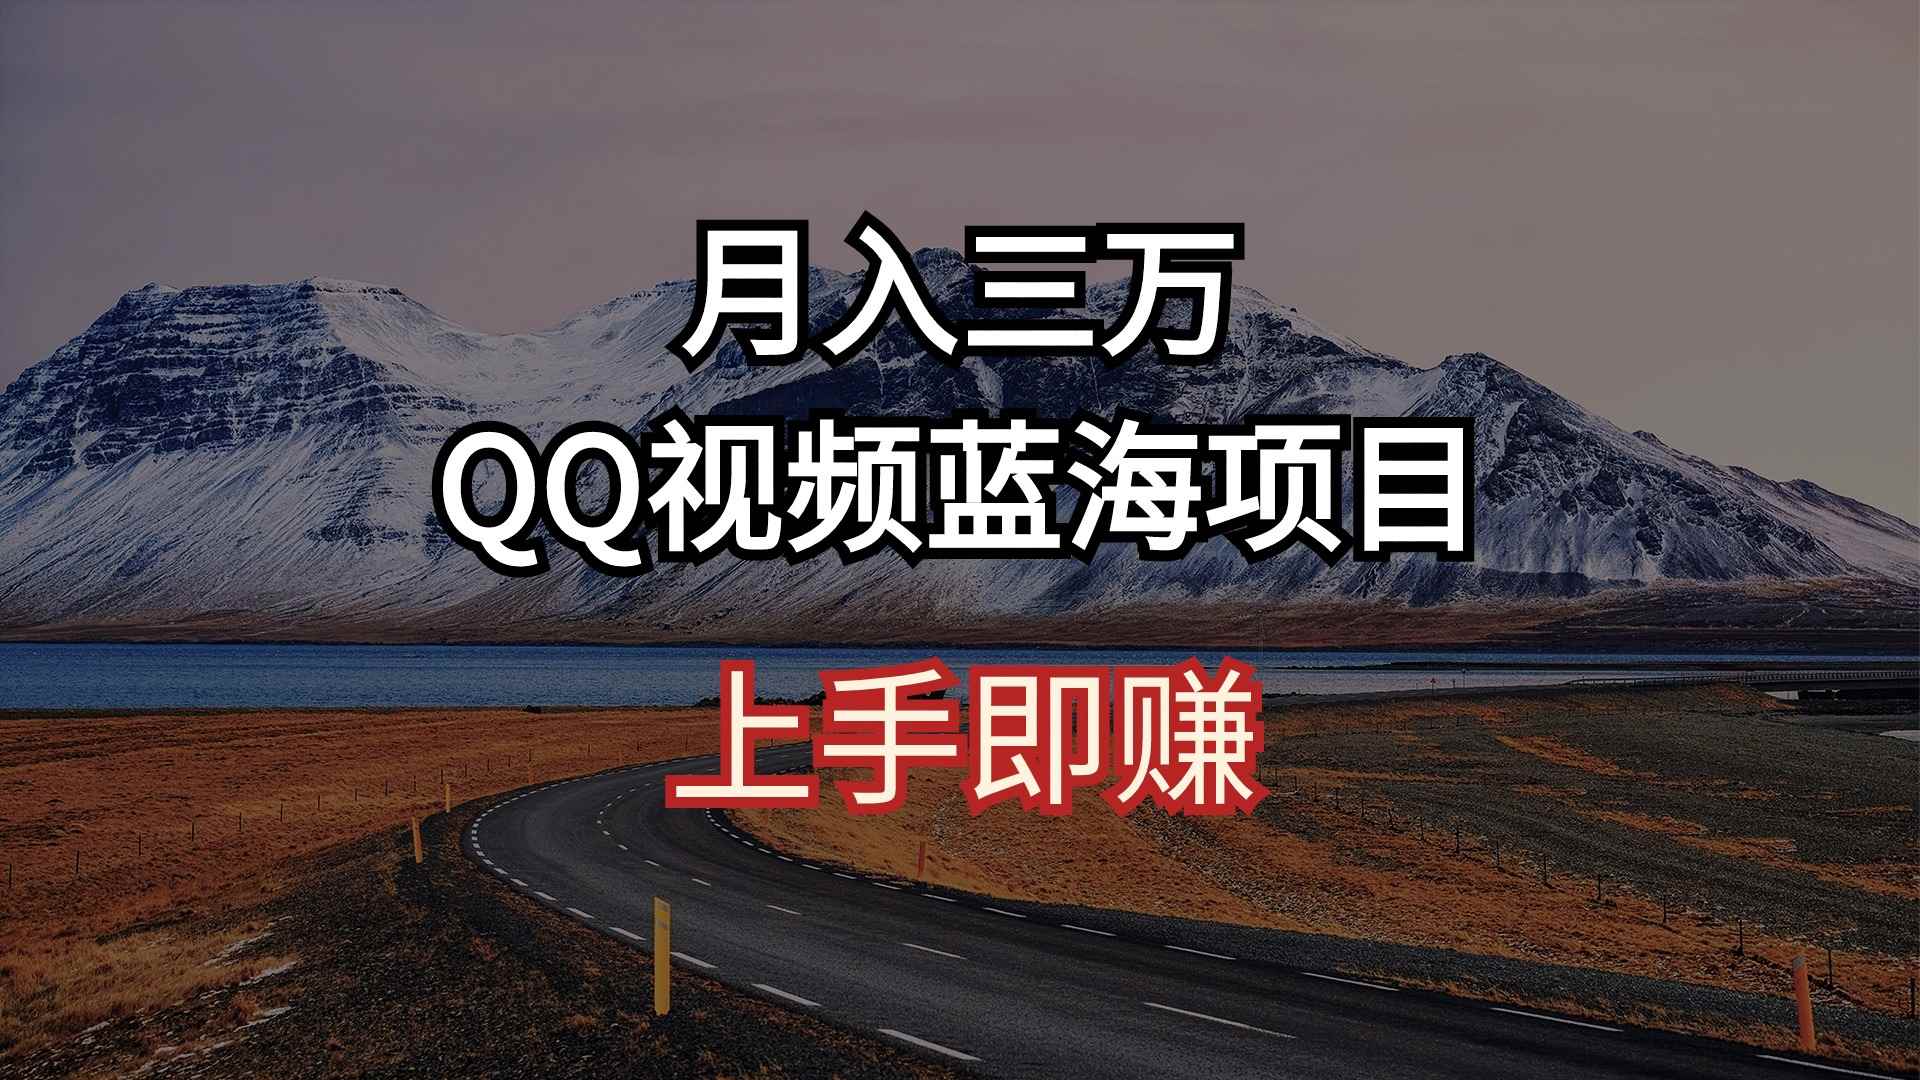 （10427期）月入三万 QQ视频蓝海项目 上手即赚